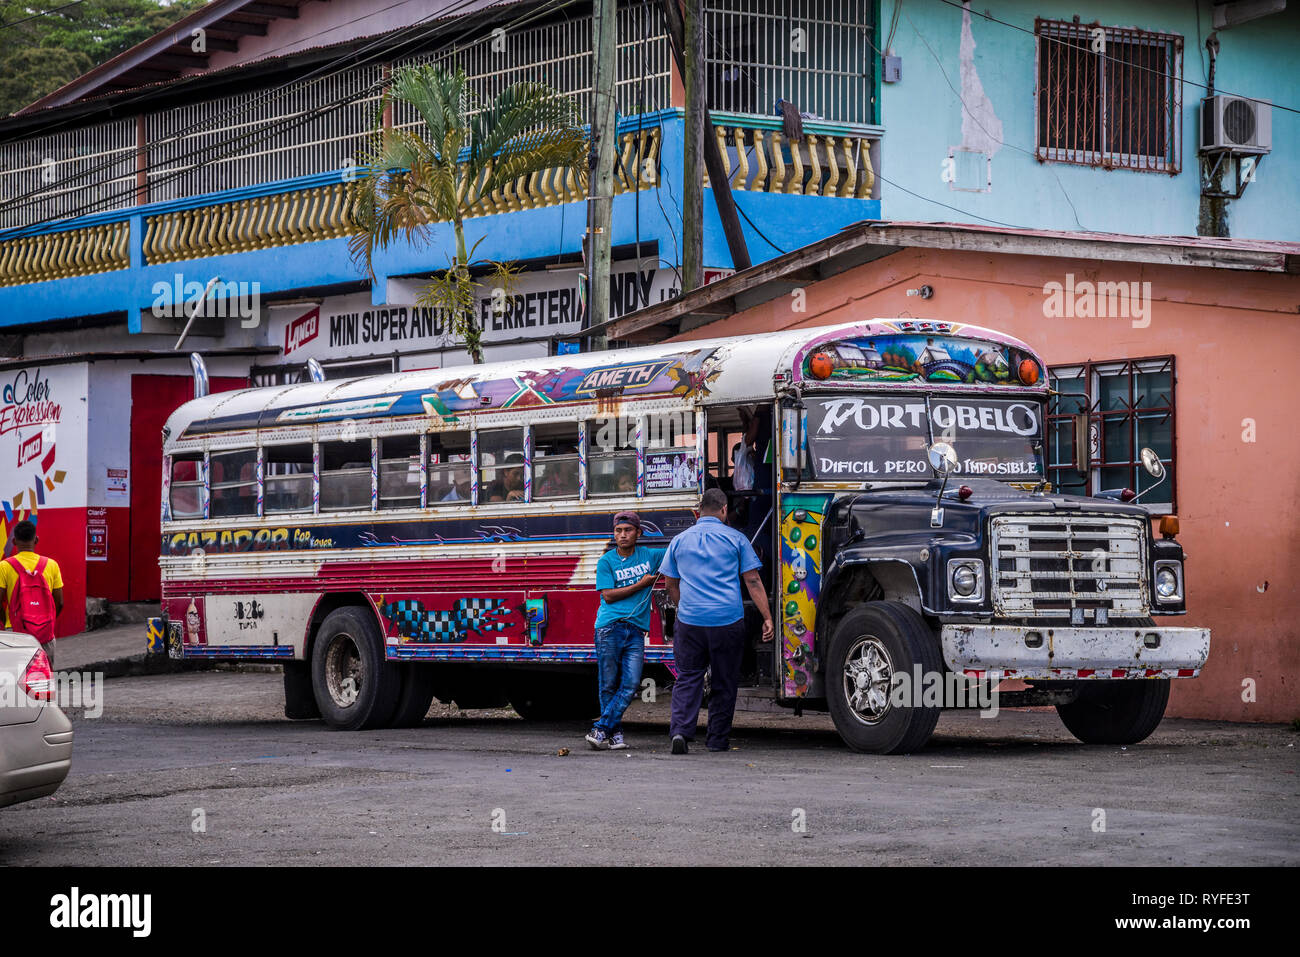 Diablo Rojo bus in Portobelo, Colon Provnce, Panama Foto Stock